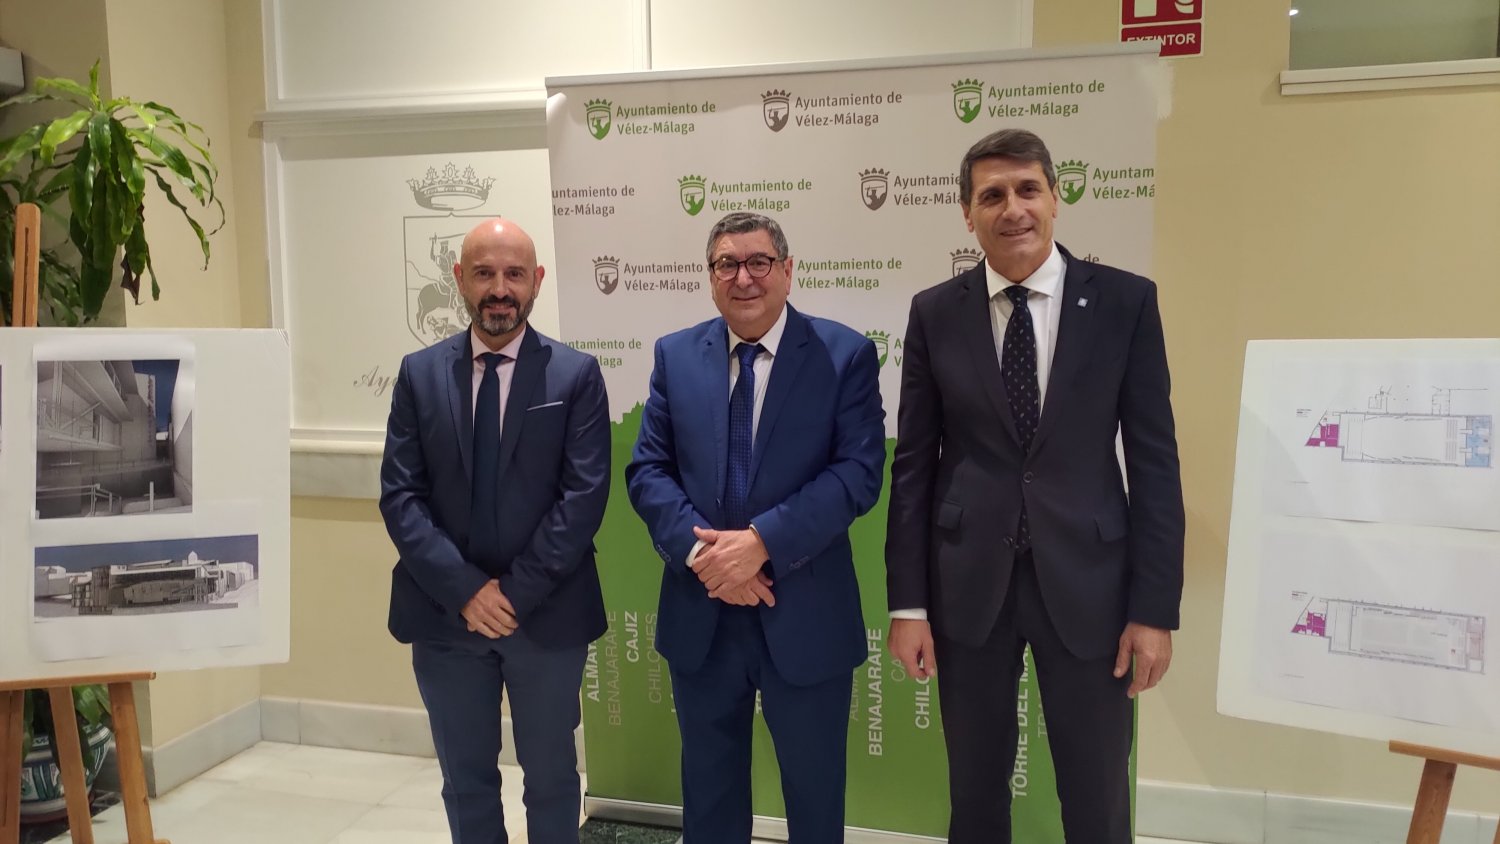 Vélez-Málaga gestiona 10 millones de euros para impulsar proyectos locales